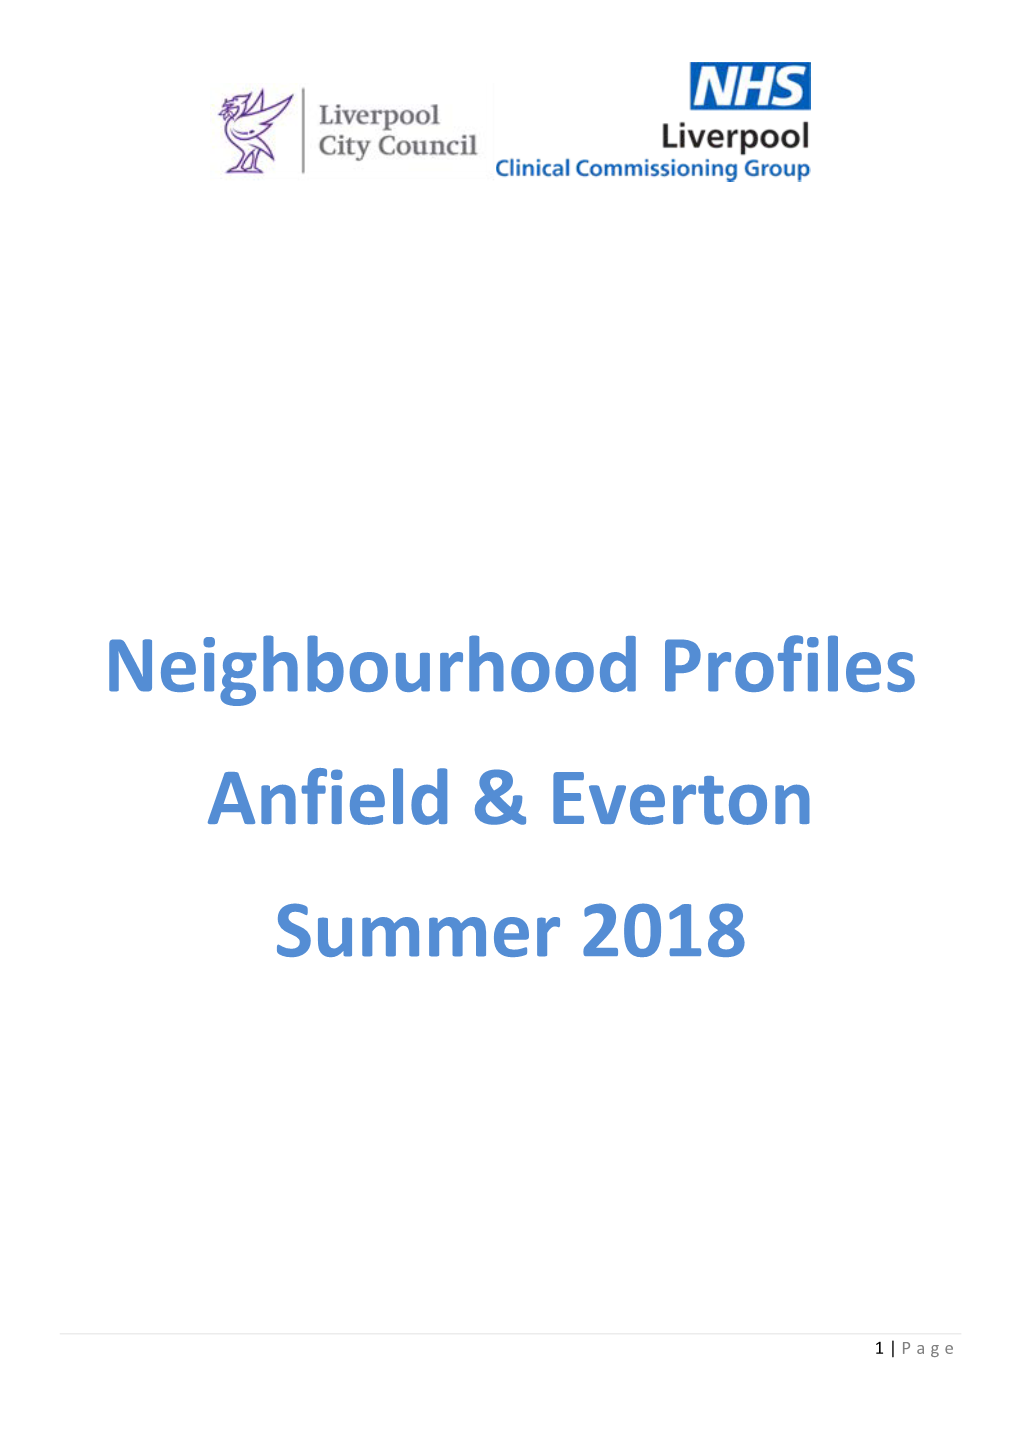 Neighbourhood Profiles Anfield & Everton Summer 2018